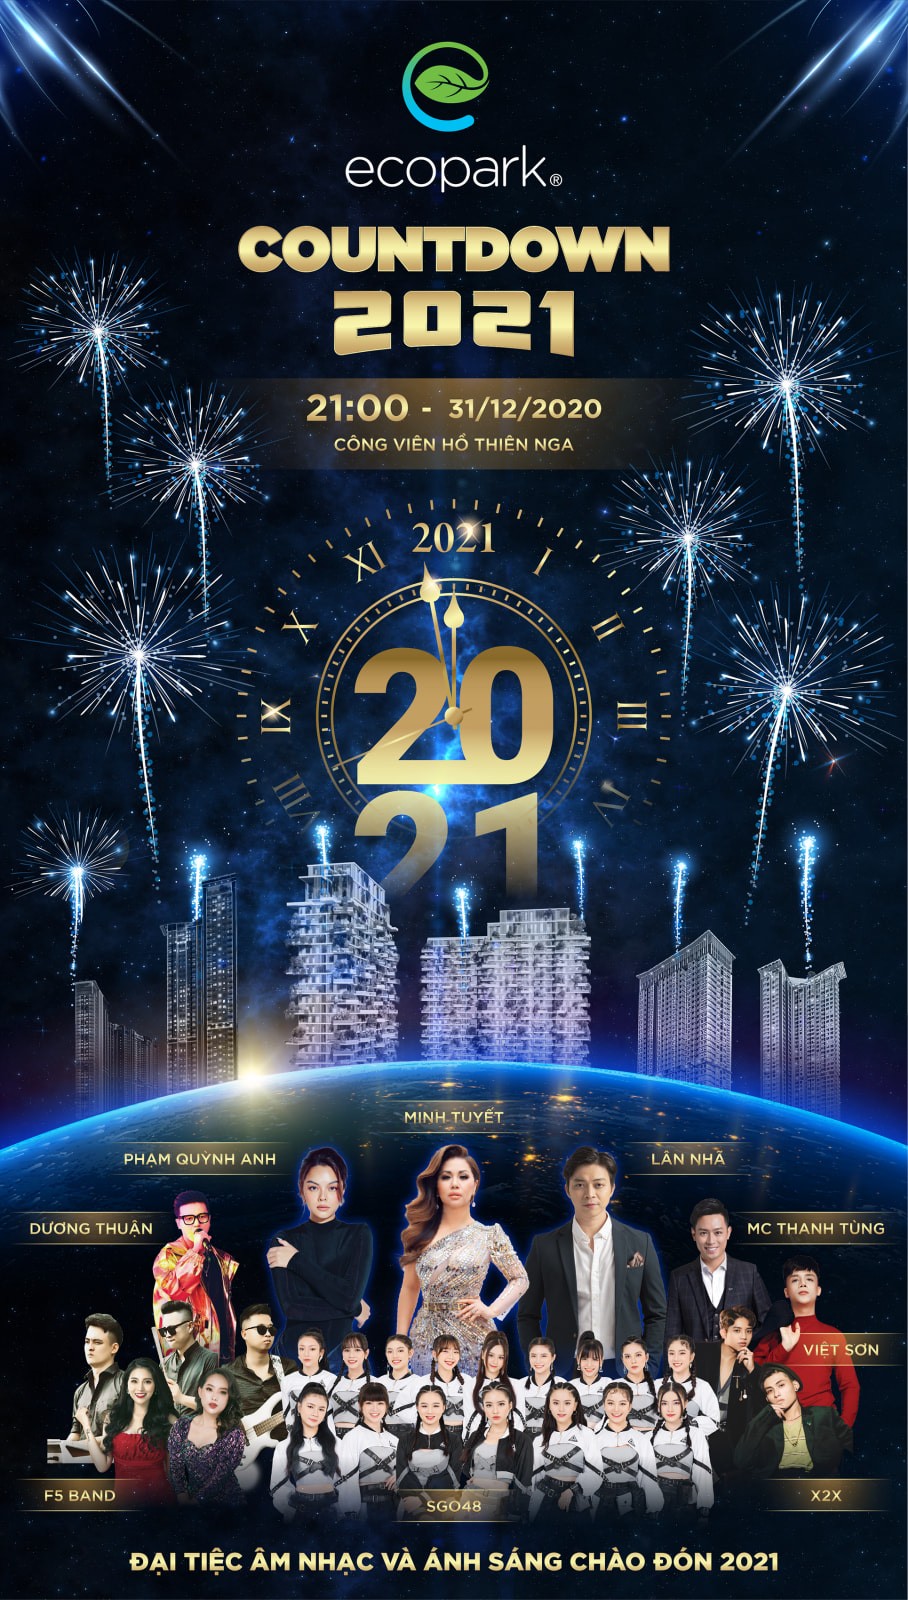 Điểm danh 3 đại tiệc Countdown chào năm mới lớn nhất tại Việt Nam - Ảnh 2.